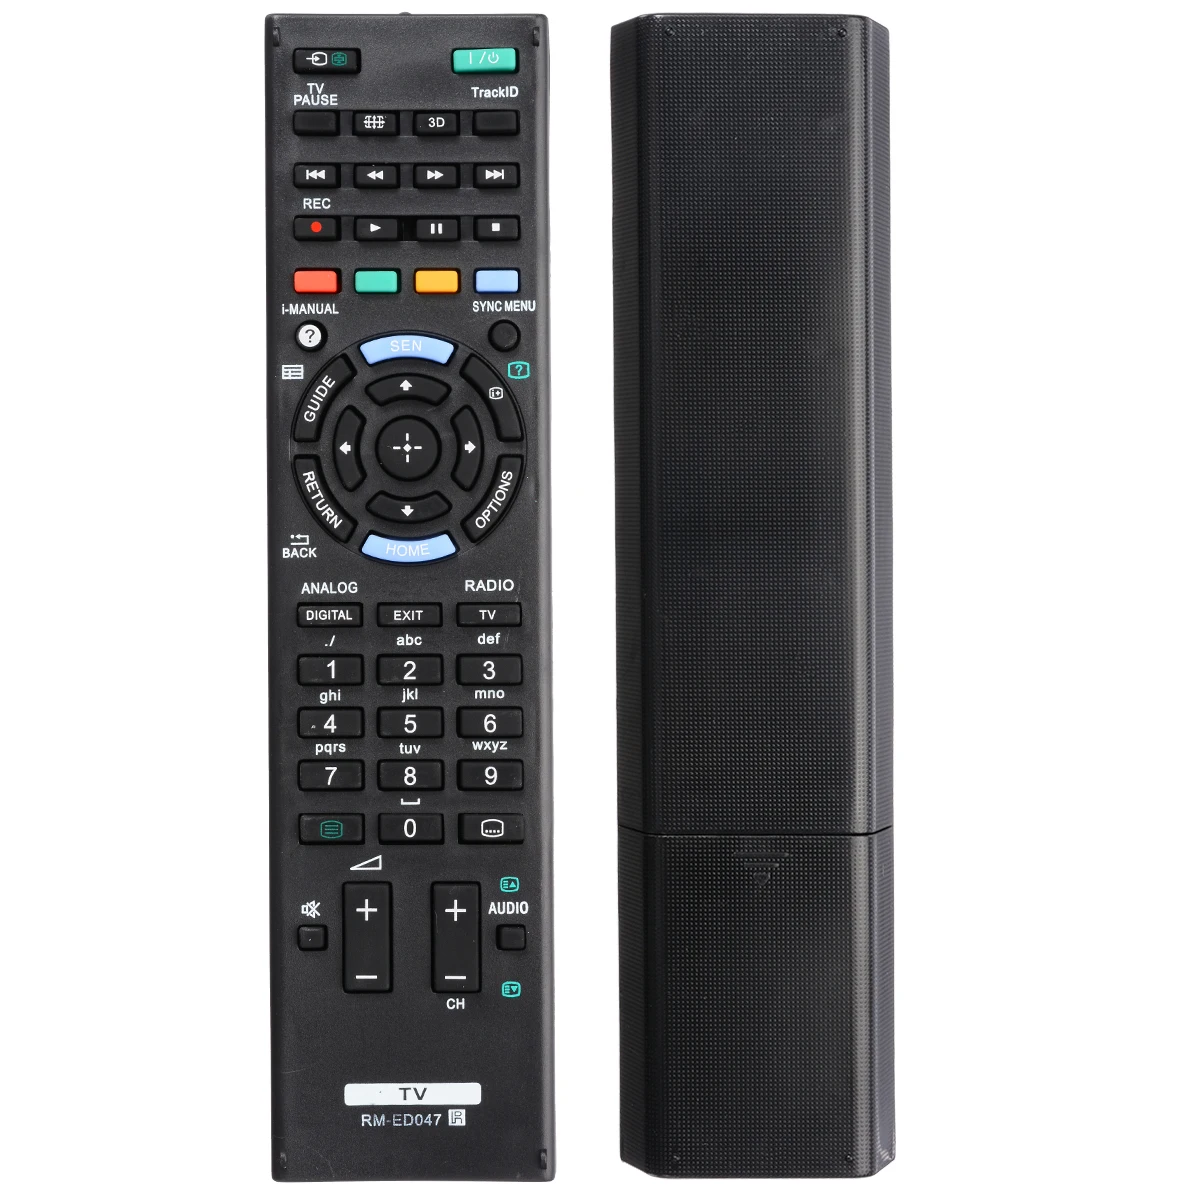 

Newest Remote Control RM-ED047 For SONY Bravia TV KDL-40HX750 KDL-46HX850 Replacement Remote Television Smart Remote Control